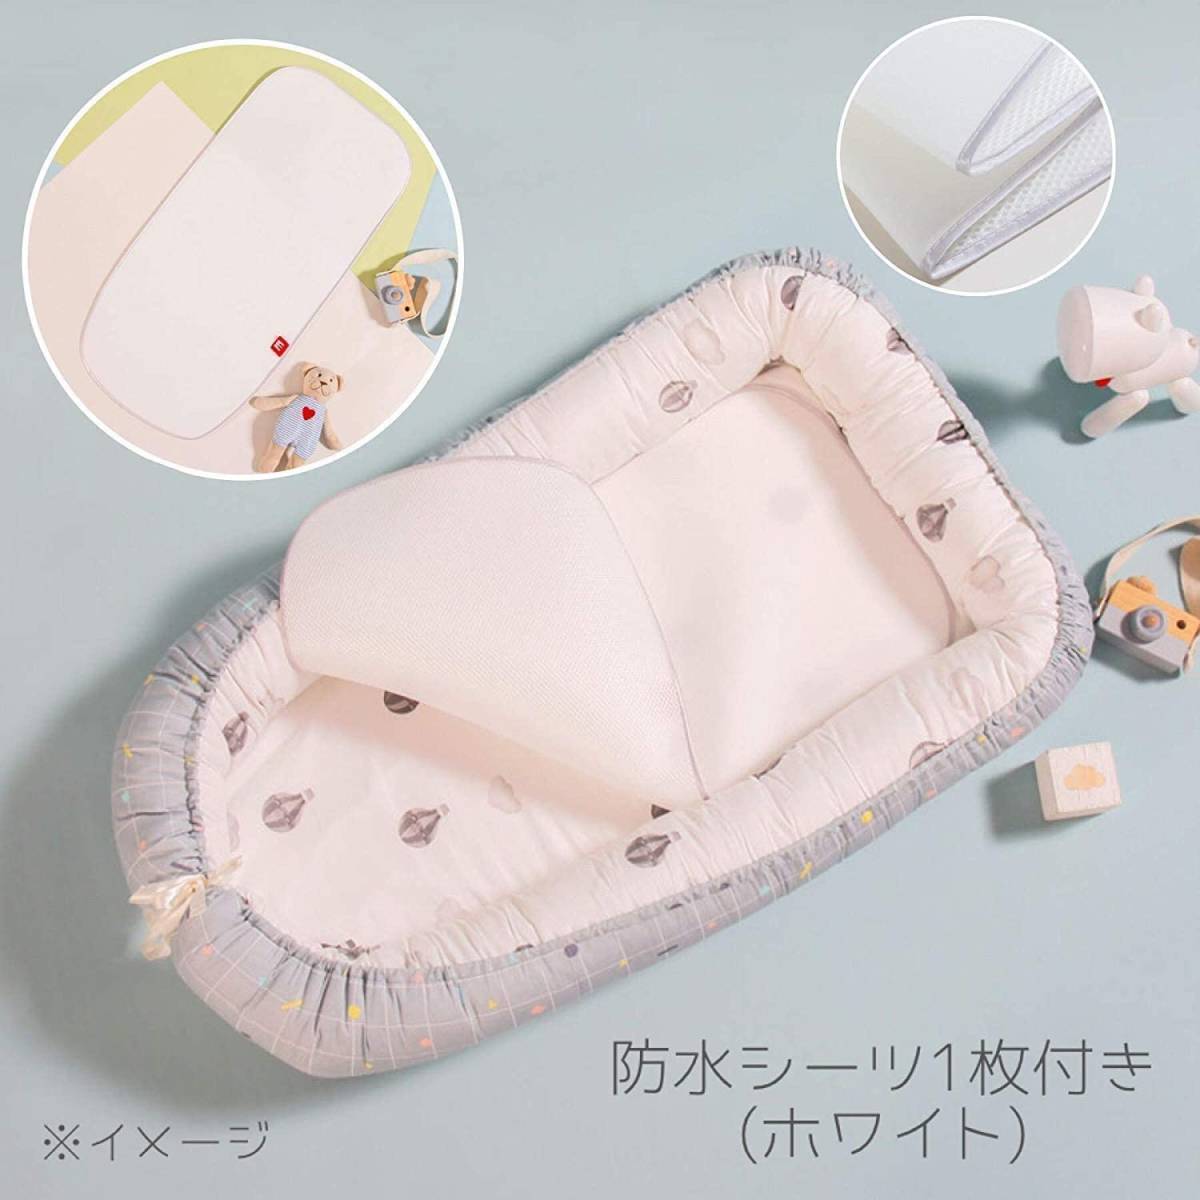  bed in bed детский футон ( водонепроницаемый сиденье имеется ) подушка имеется матрас футон детская кроватка bed защита Koo вентилятор ( задний модель * серый *BOY)